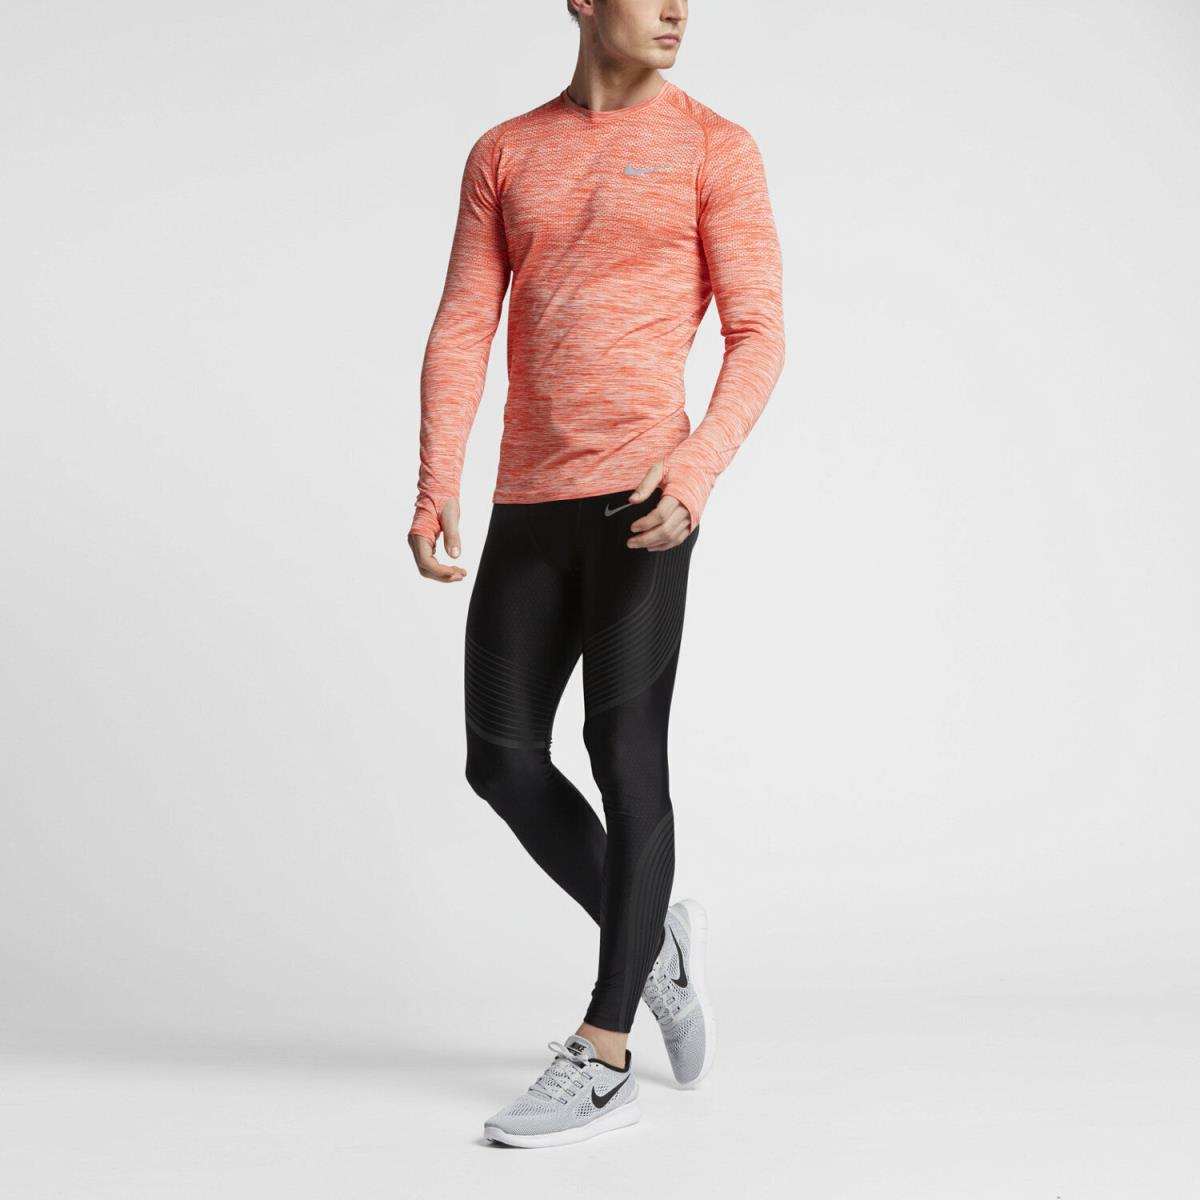 Nike clothing DRI - Orange 3